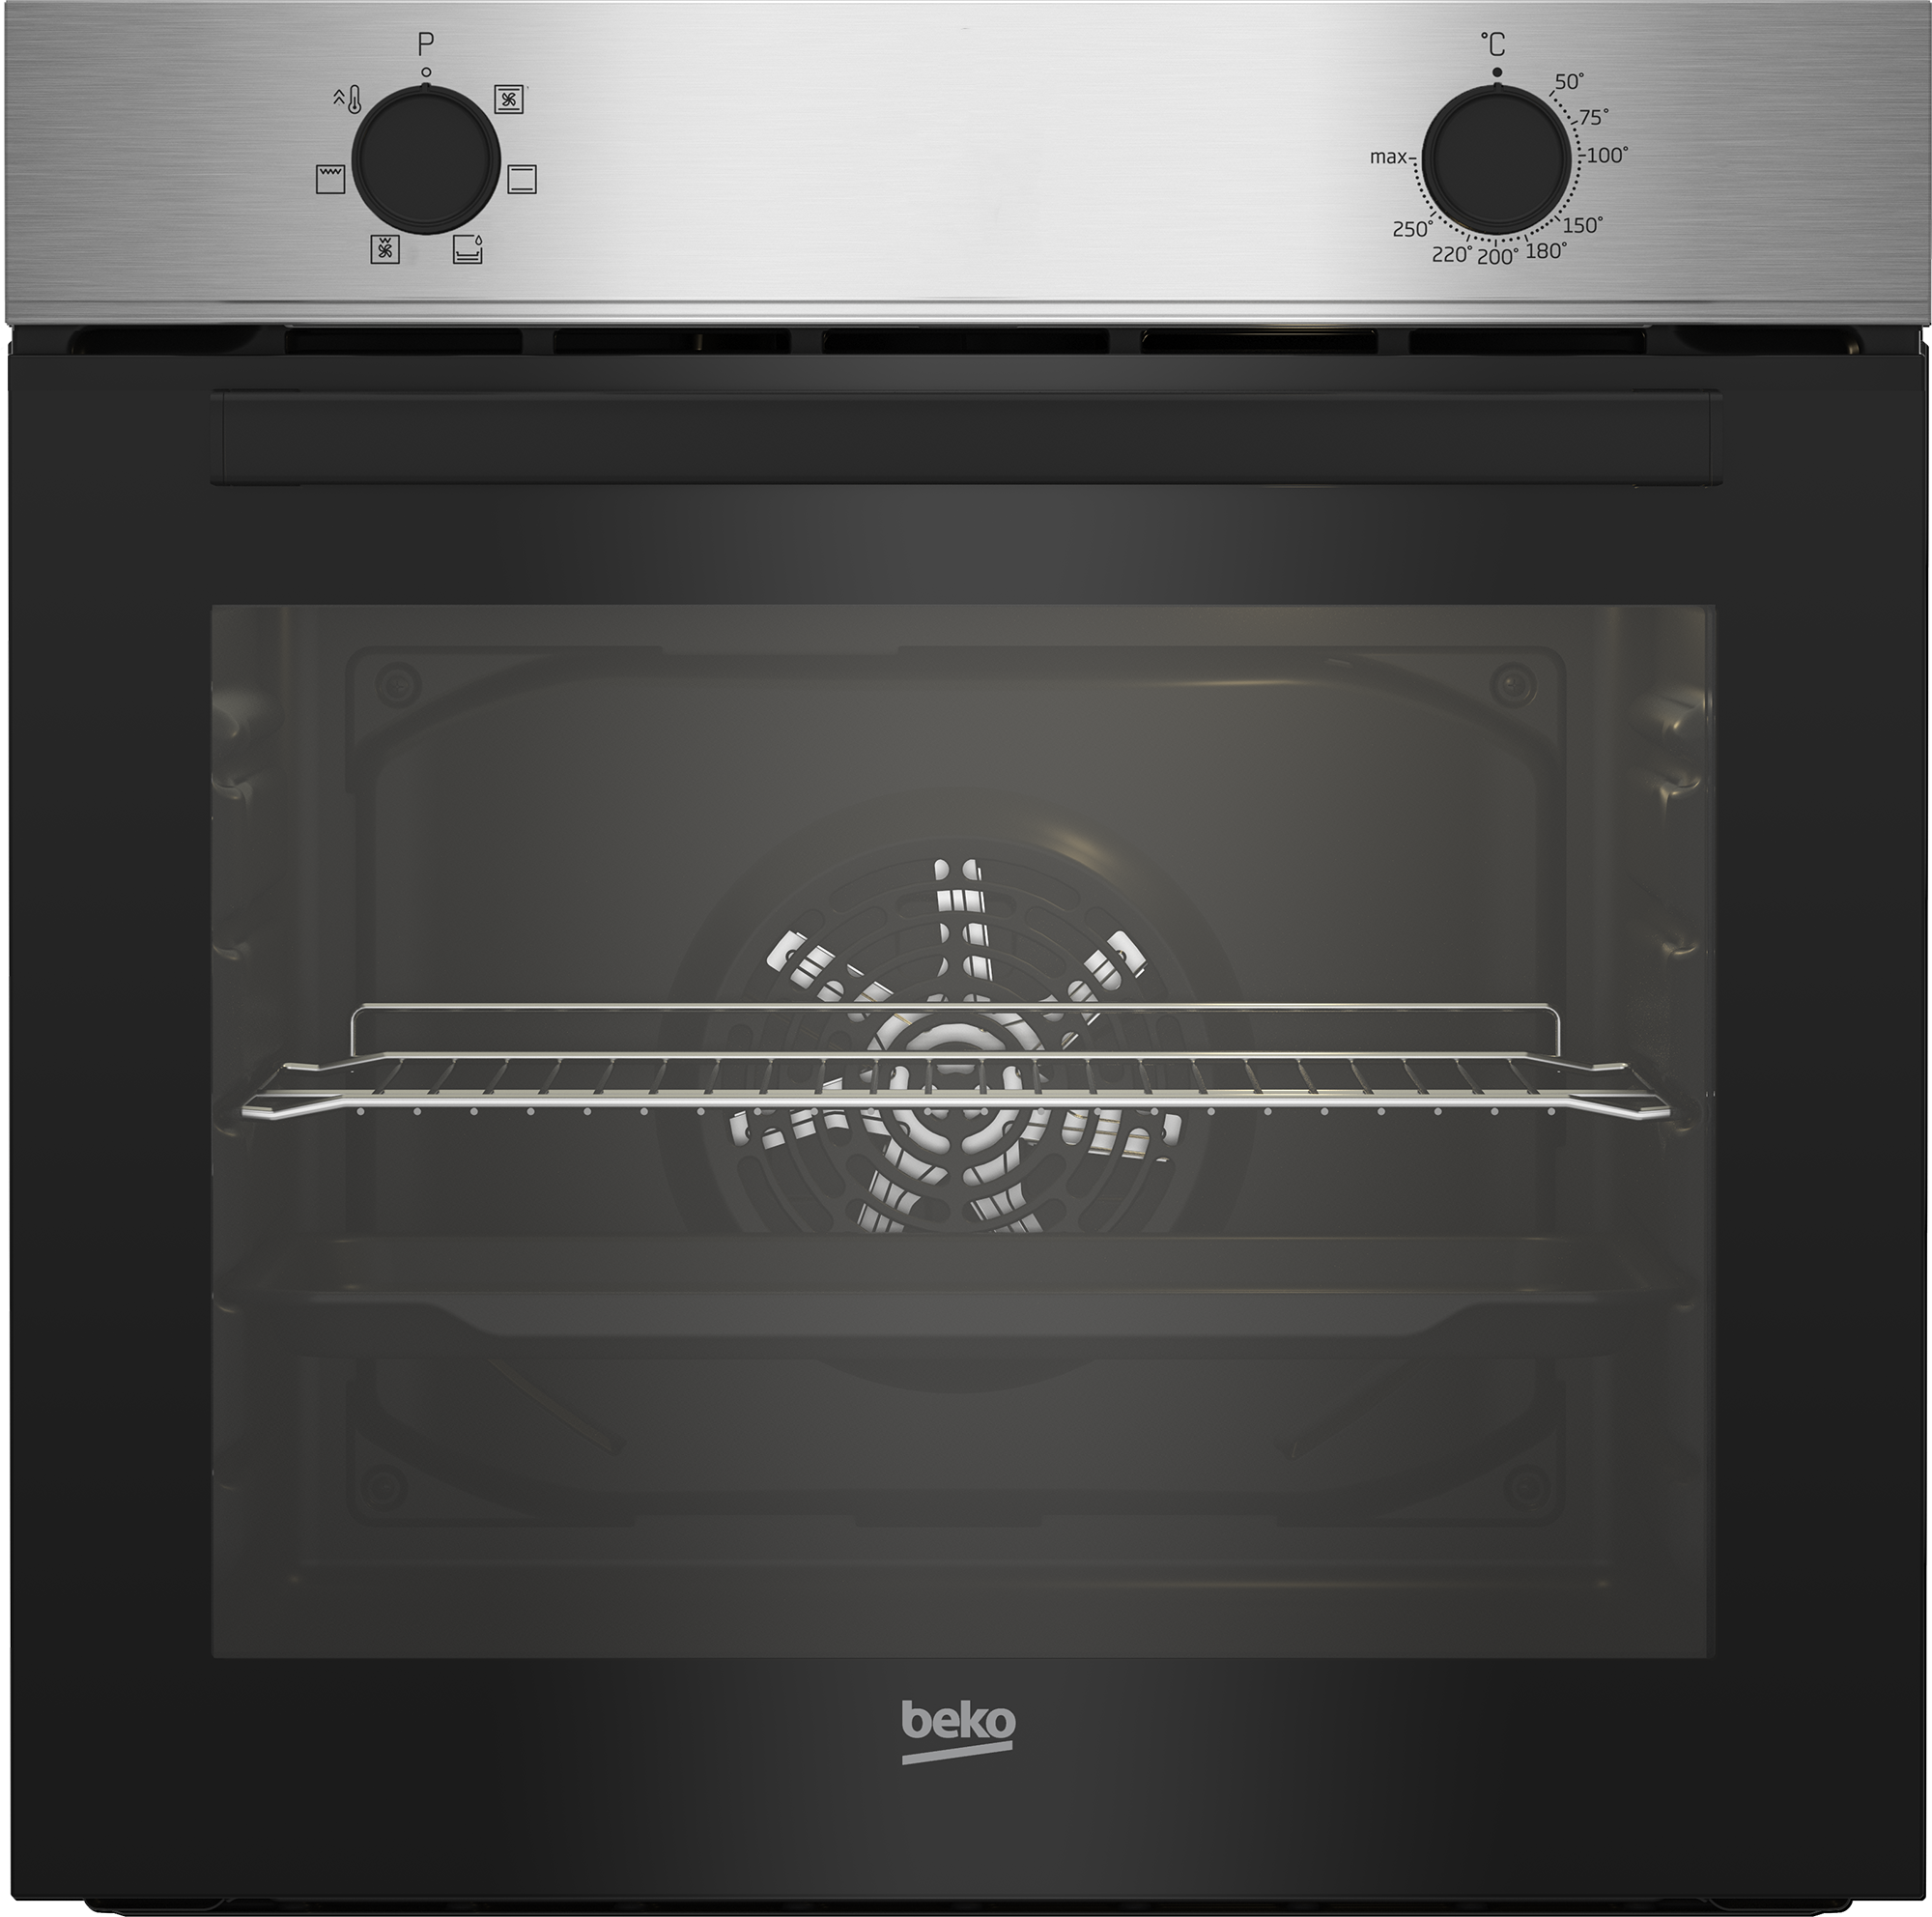 nobilia® Küchenzeile »"Riva basic"«, vormontiert, Ausrichtung wählbar, Breite 360 cm, mit E-Geräten